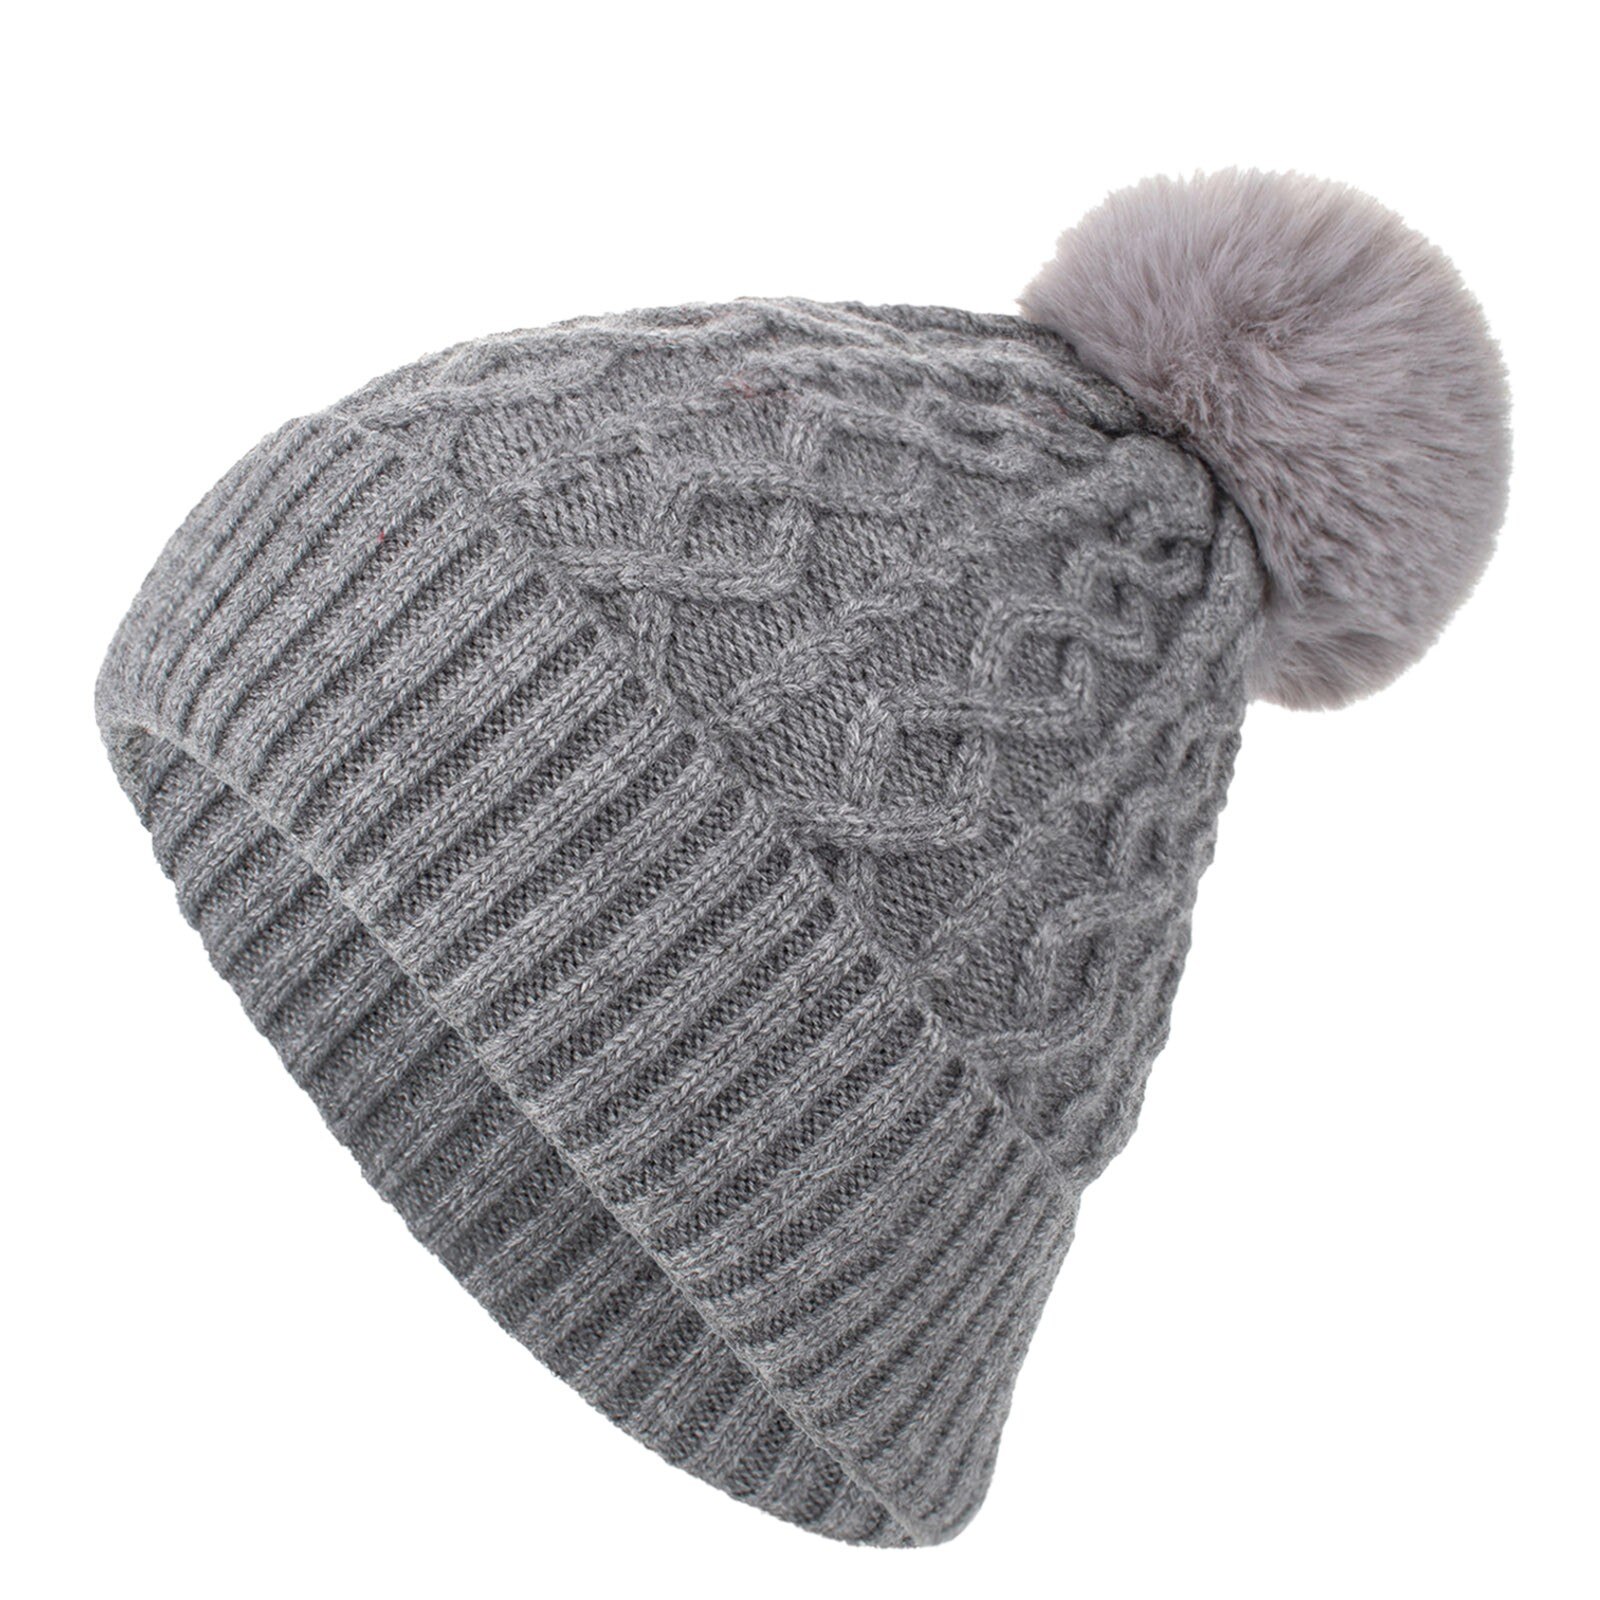 E nuovissimo E di alta qualità inverno esterno neutro per adulti mantenere caldi cappelli per capelli cappello di lana lavorato a maglia in peluche caldo E confortevole: GY